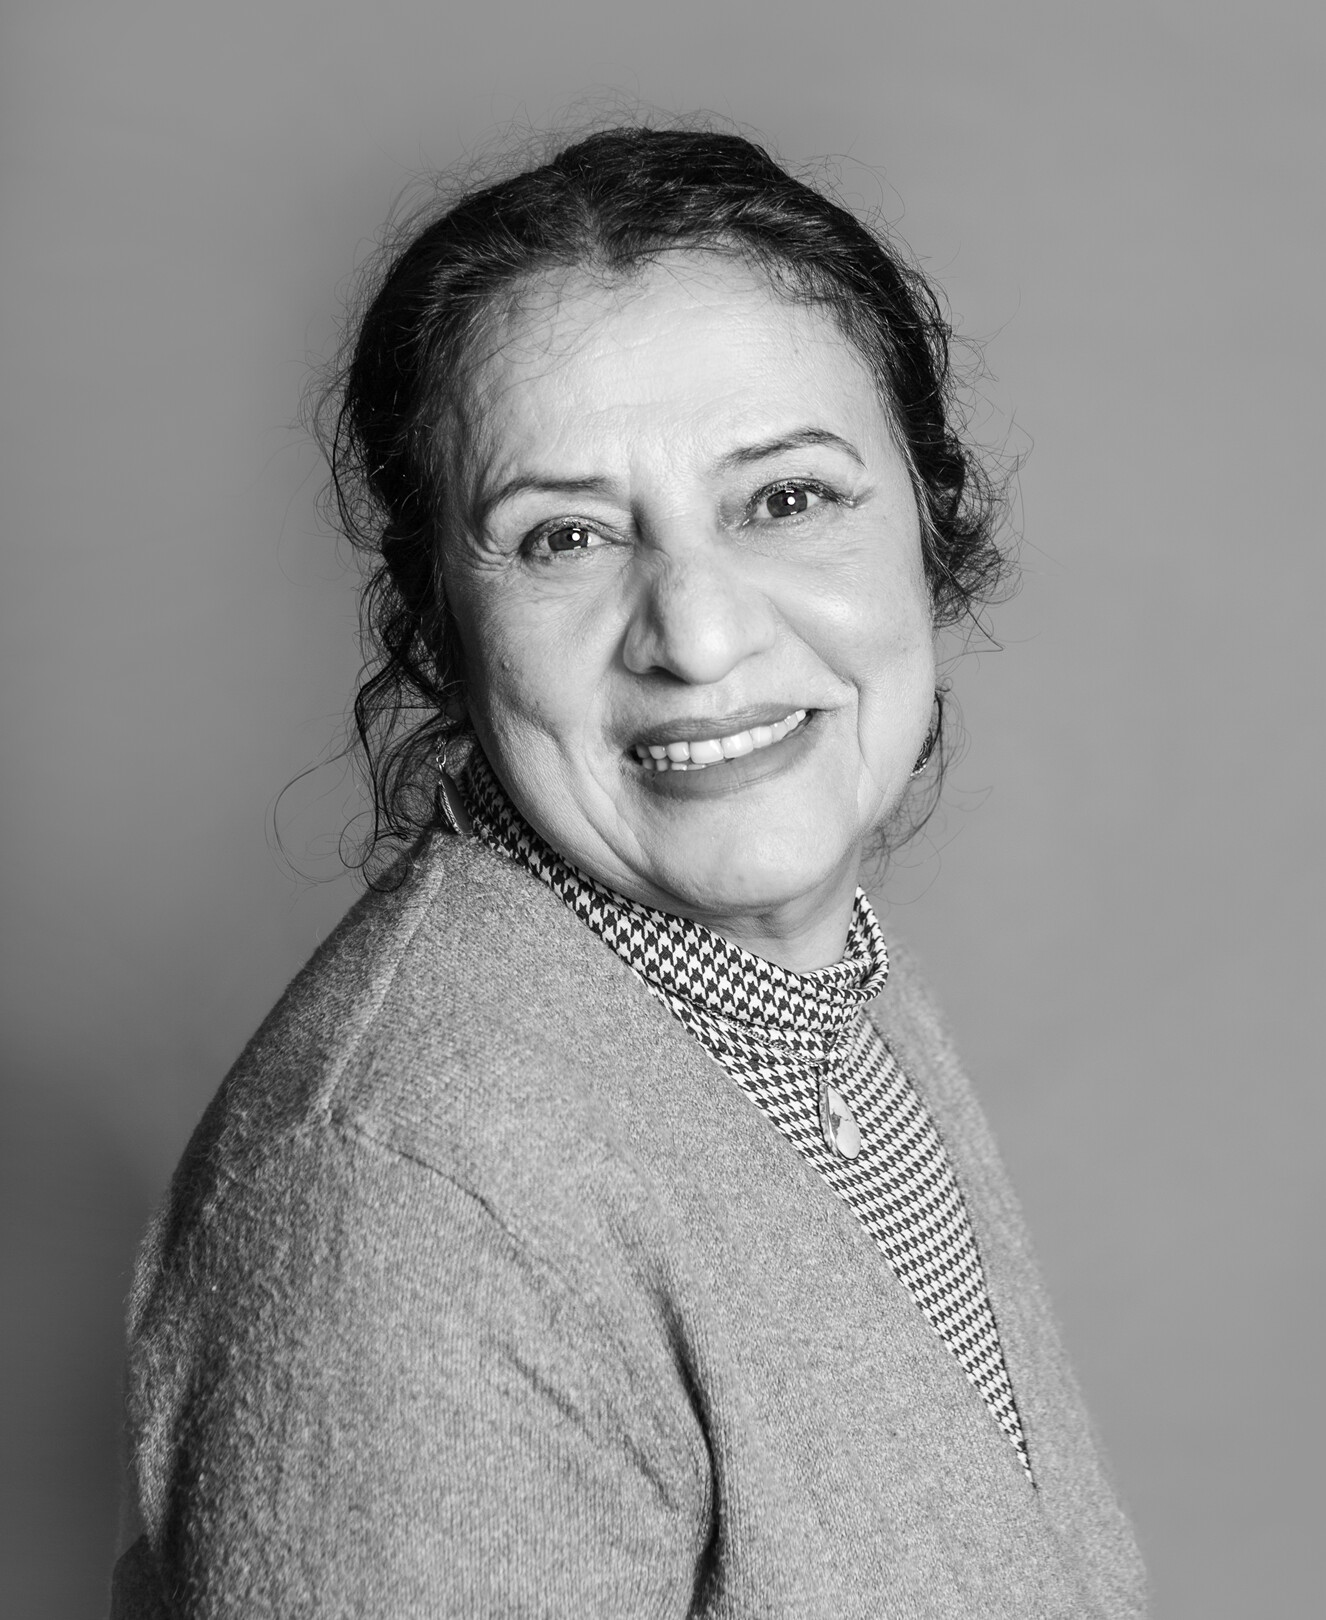 Mina Rahimzacleh